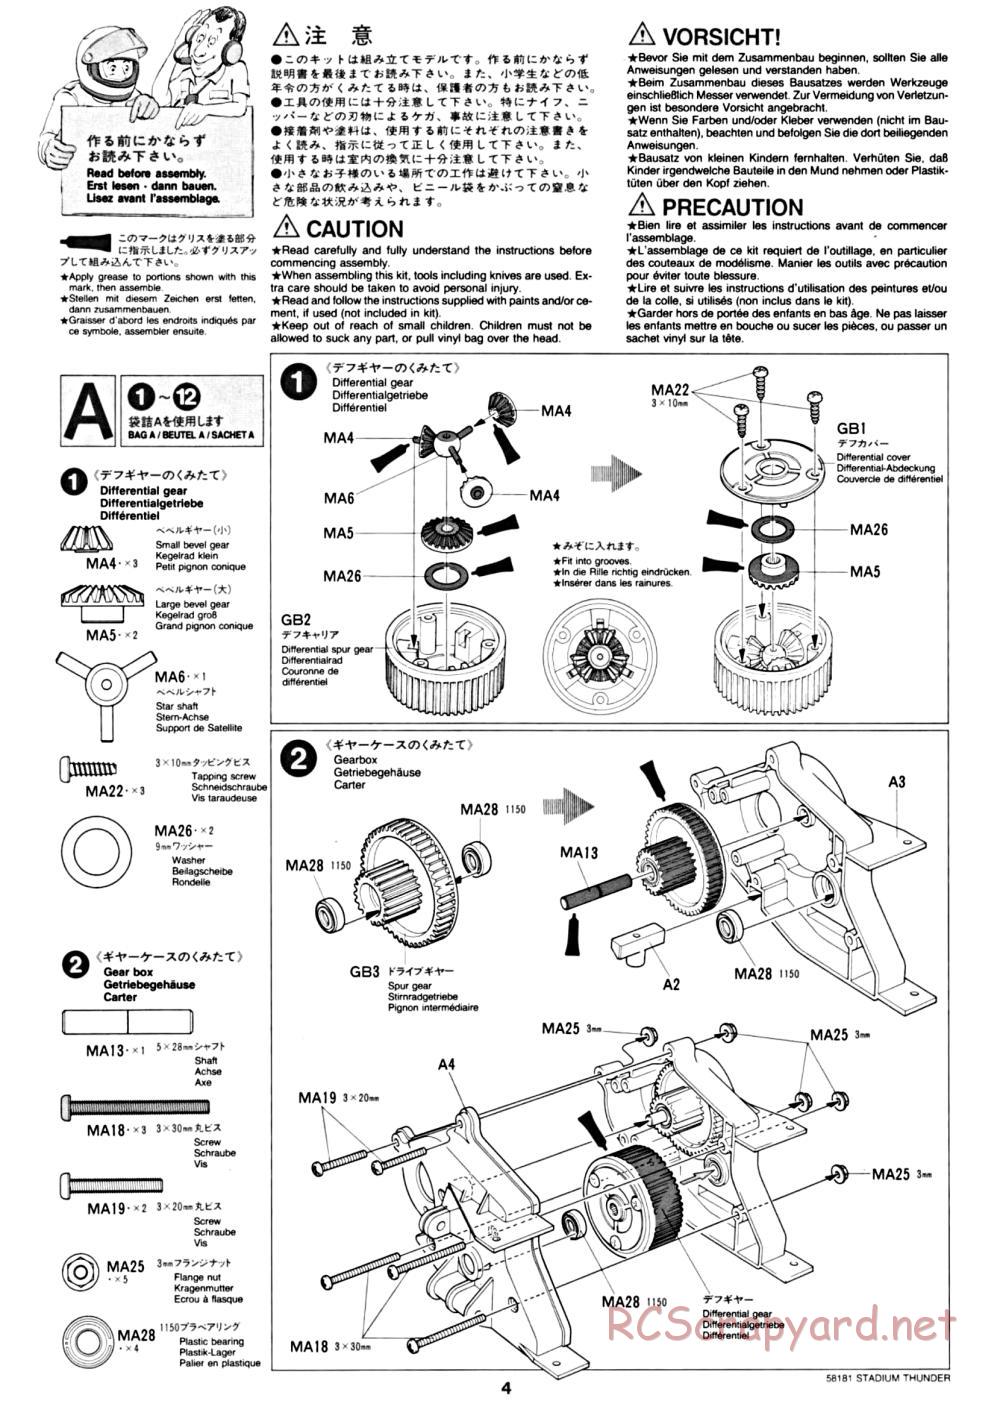 Tamiya - Stadium Thunder Chassis - Manual - Page 4